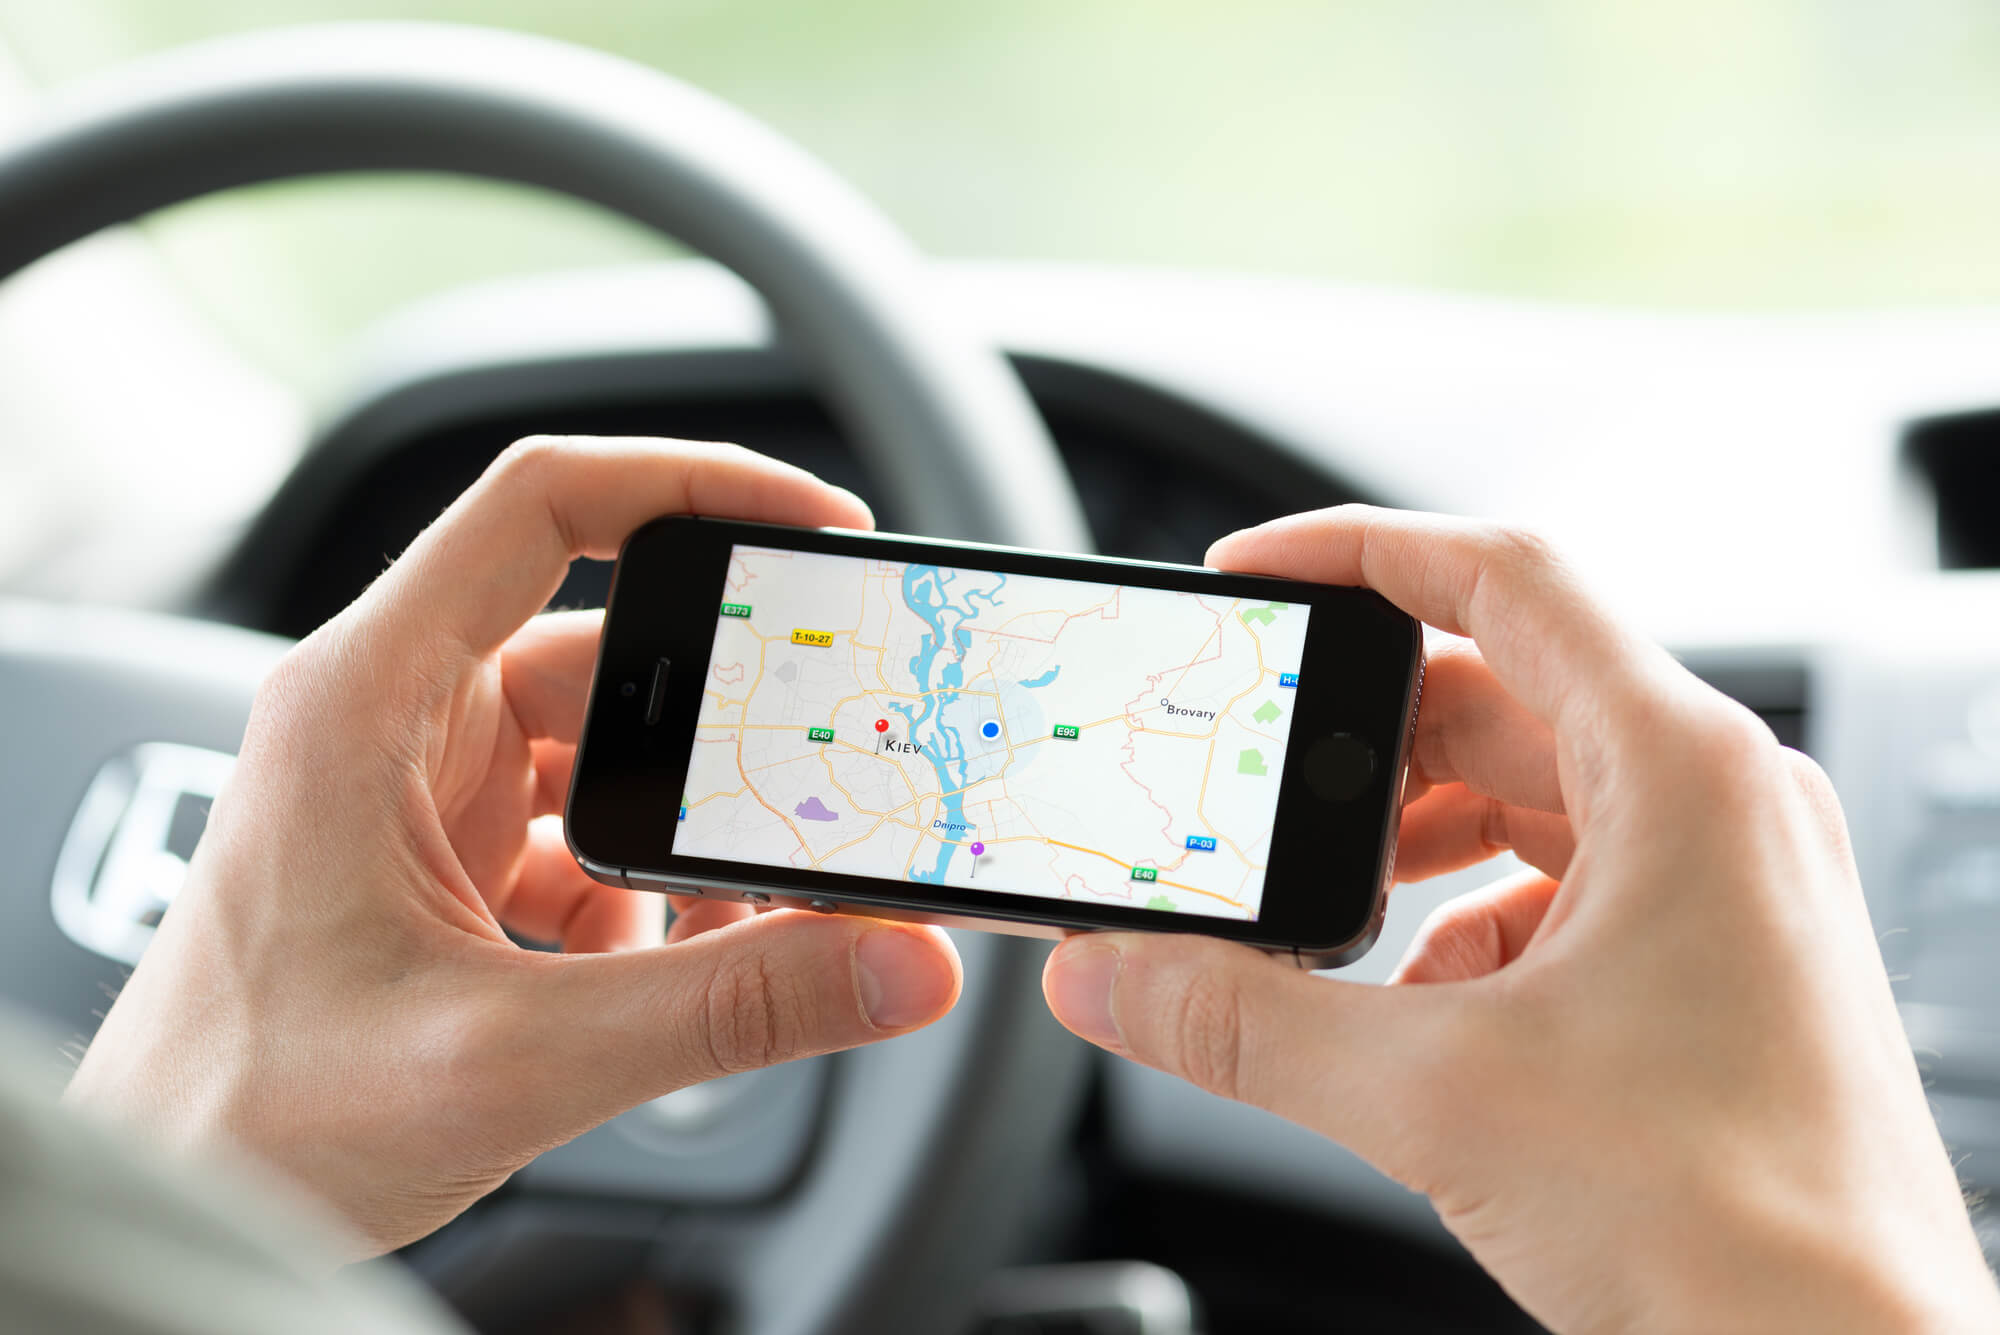 Google Maps: 10 dicas incríveis para aproveitar a ferramenta em viagens